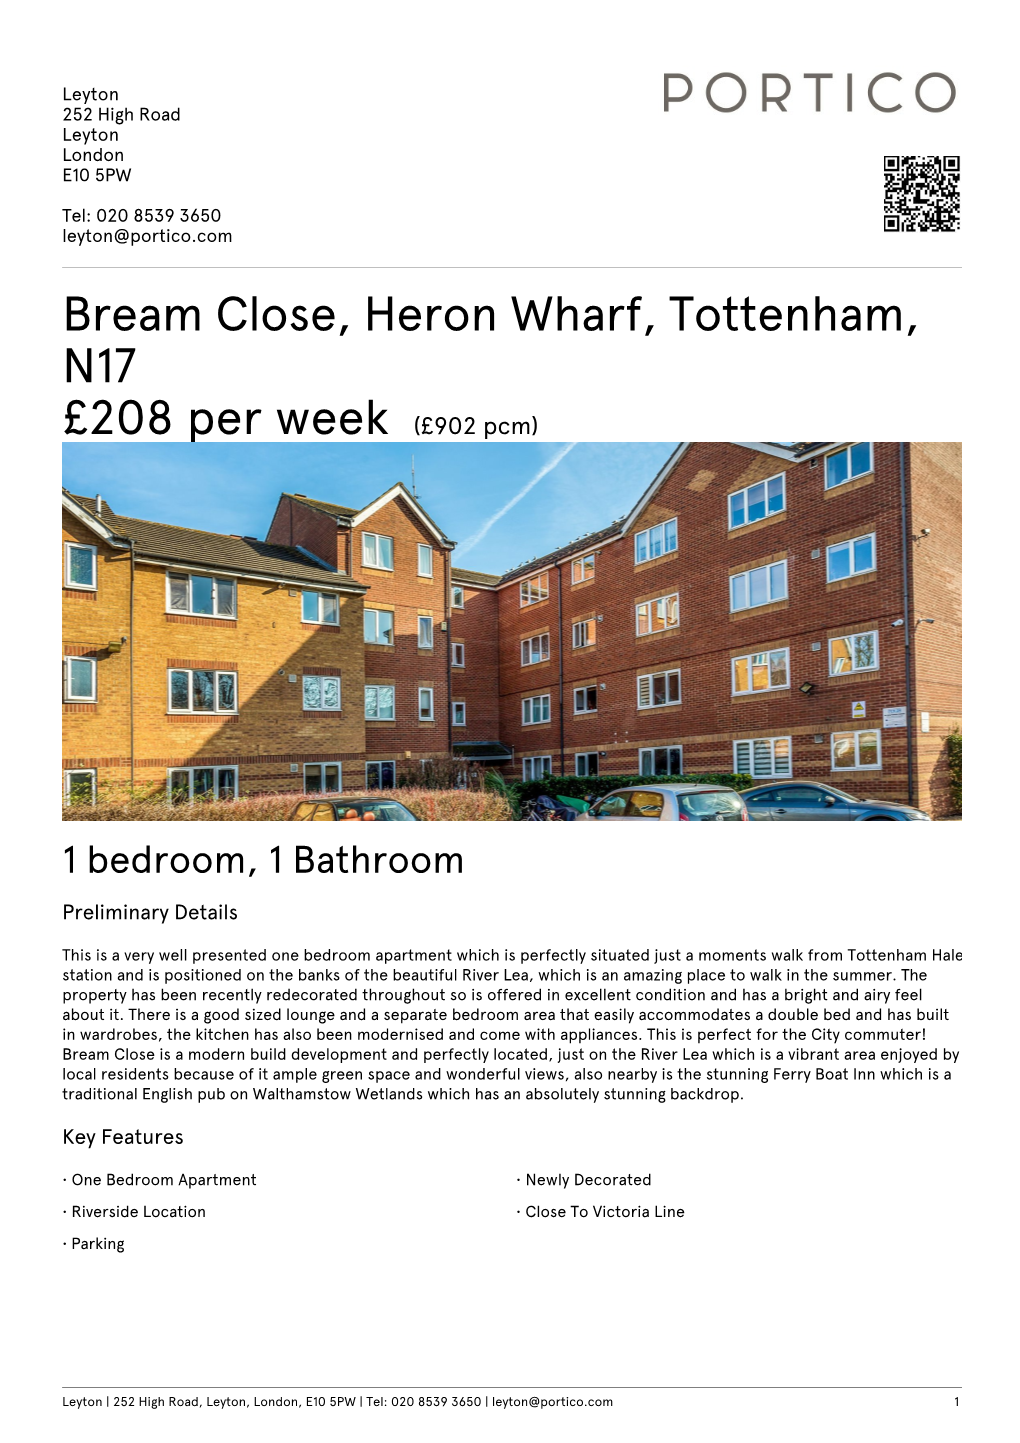 Bream Close, Heron Wharf, Tottenham, N17 £208 Per Week